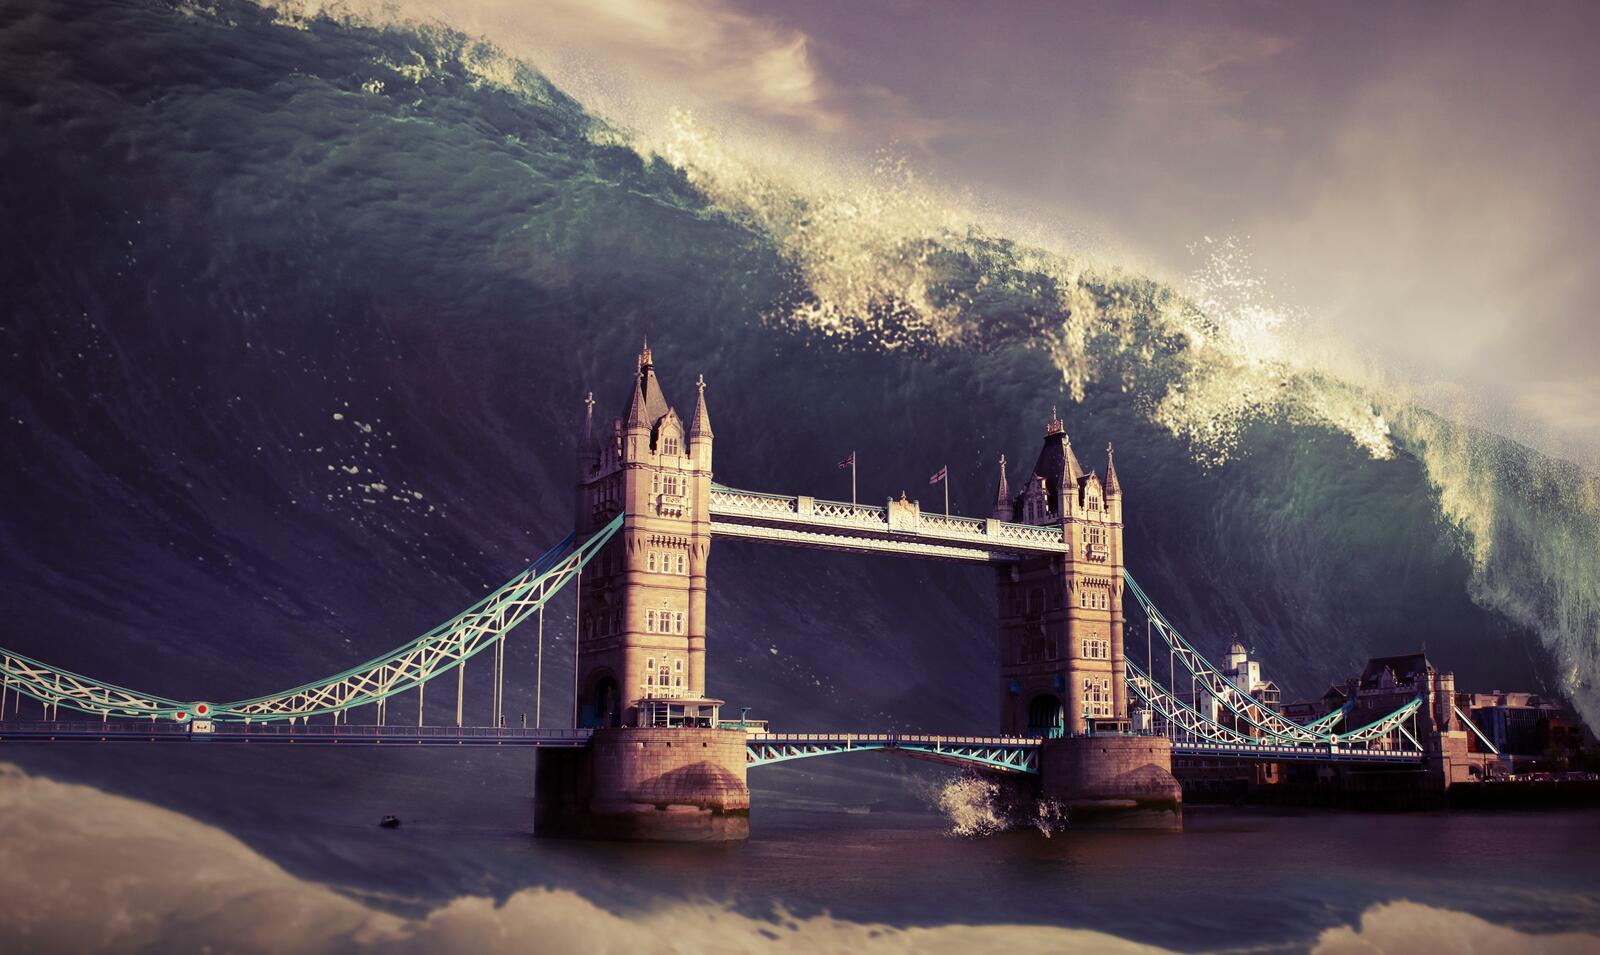 Обои Лондон апокалипсис цунами на рабочий стол